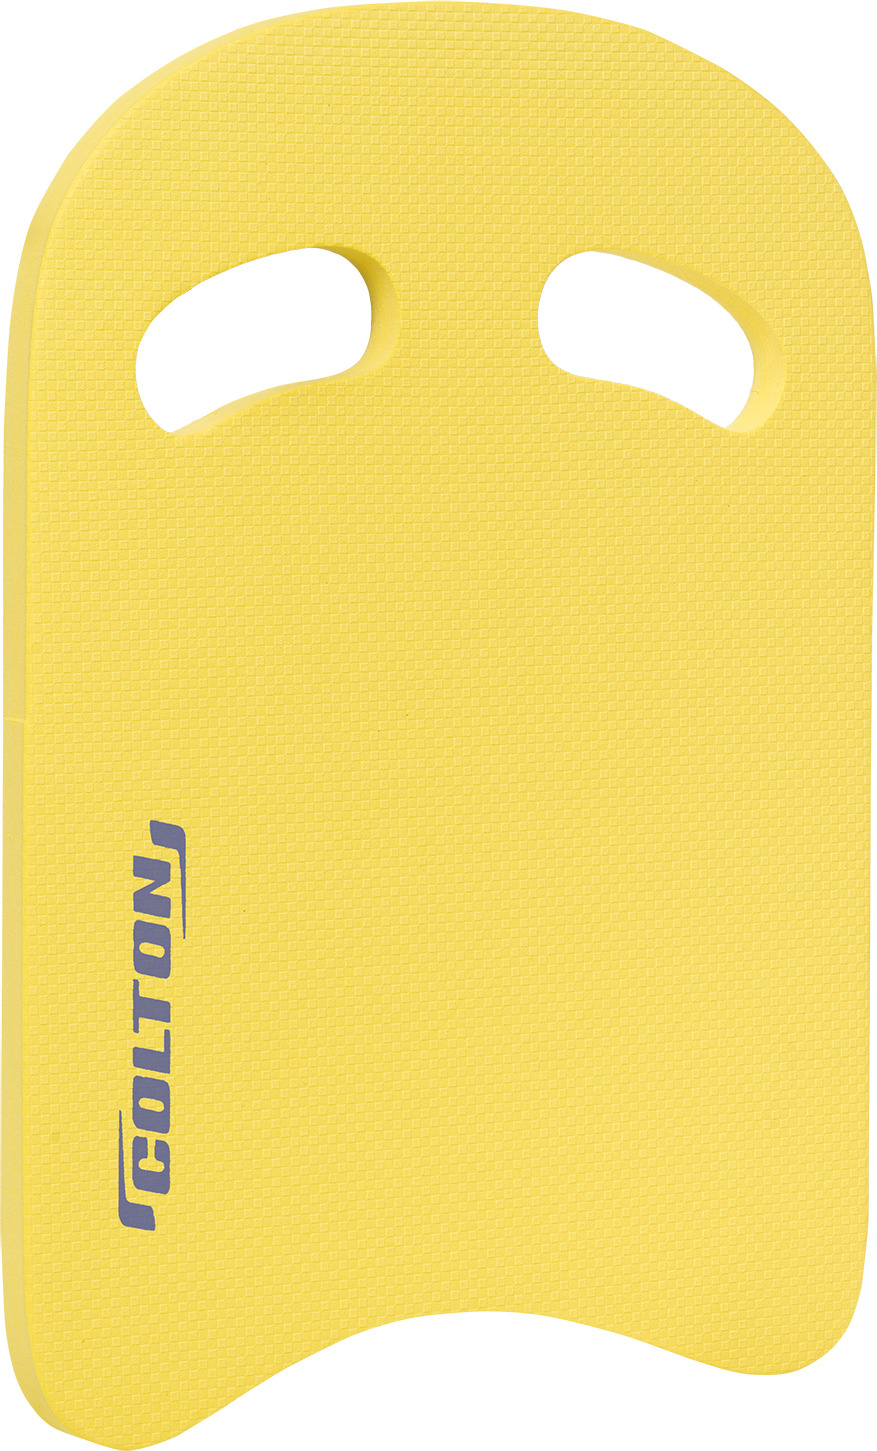 Доска для плавания Colton, цвет: желтый. SB-101